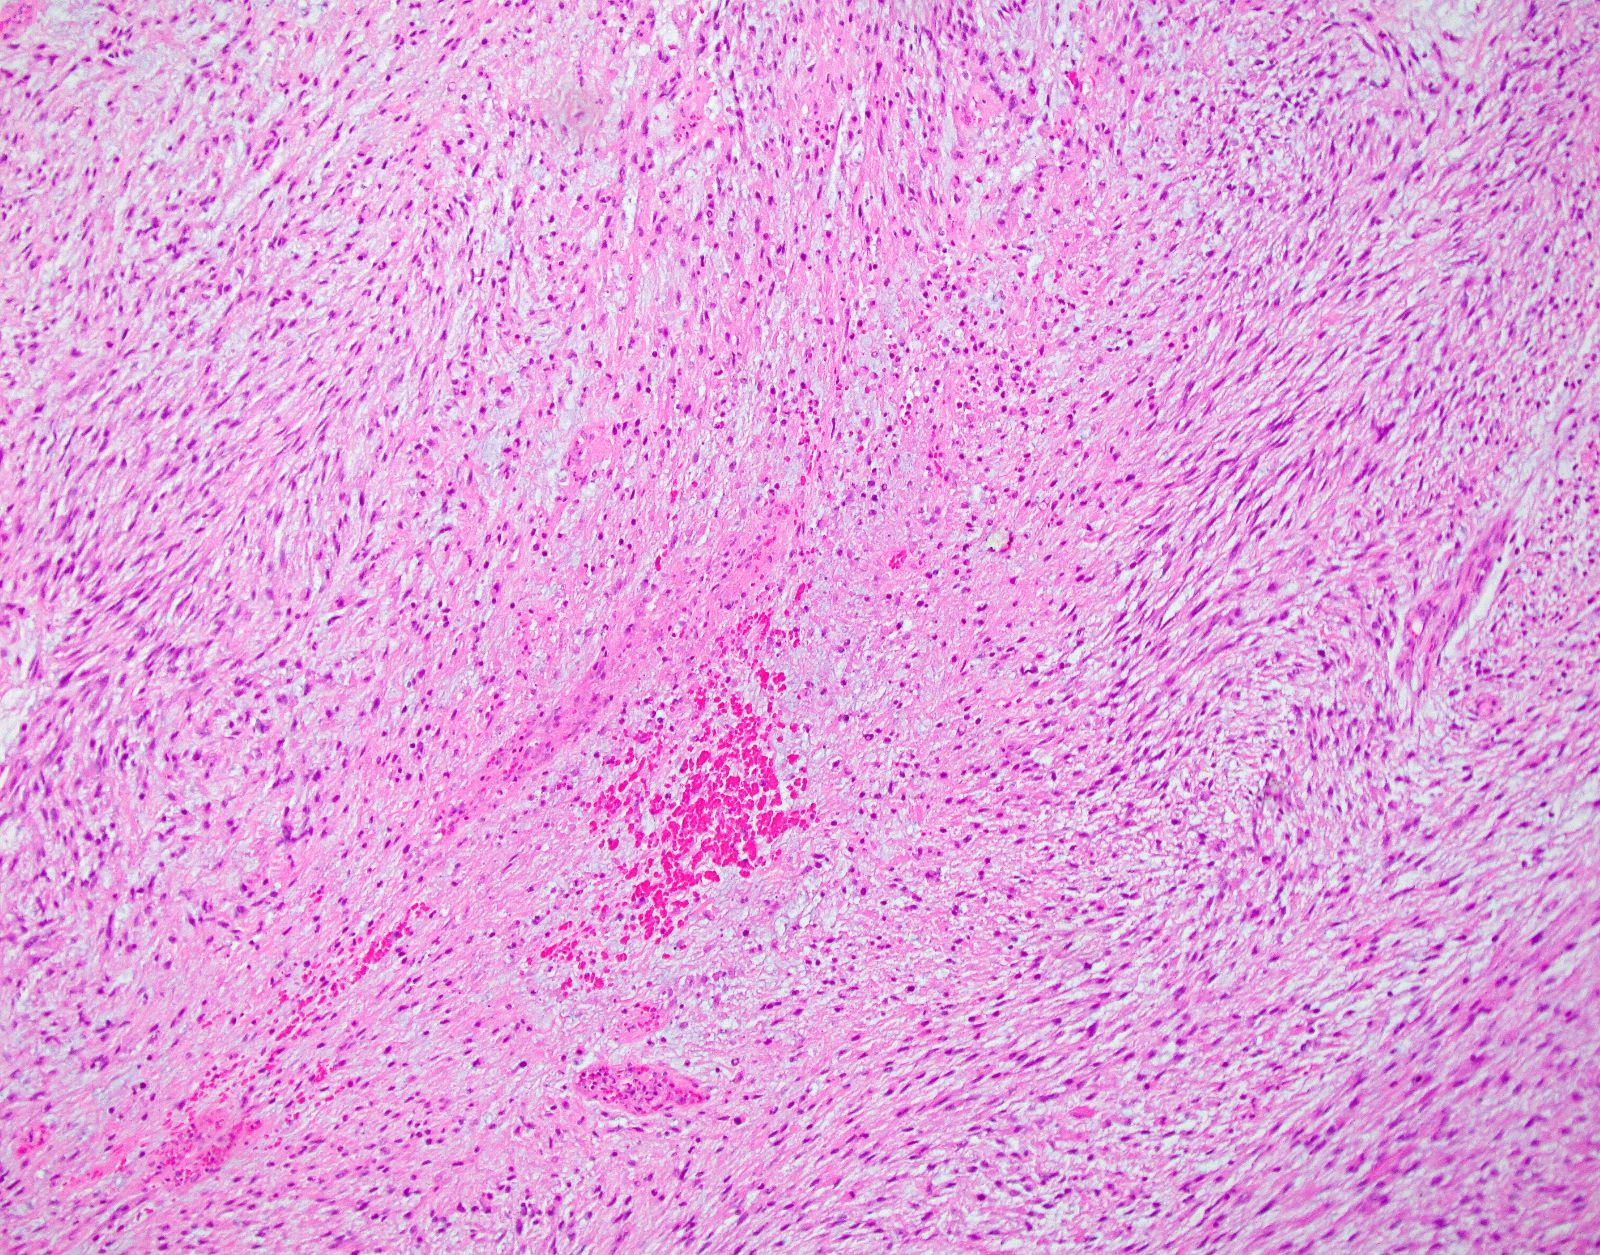 Myxoid mesenchymal neoplasm